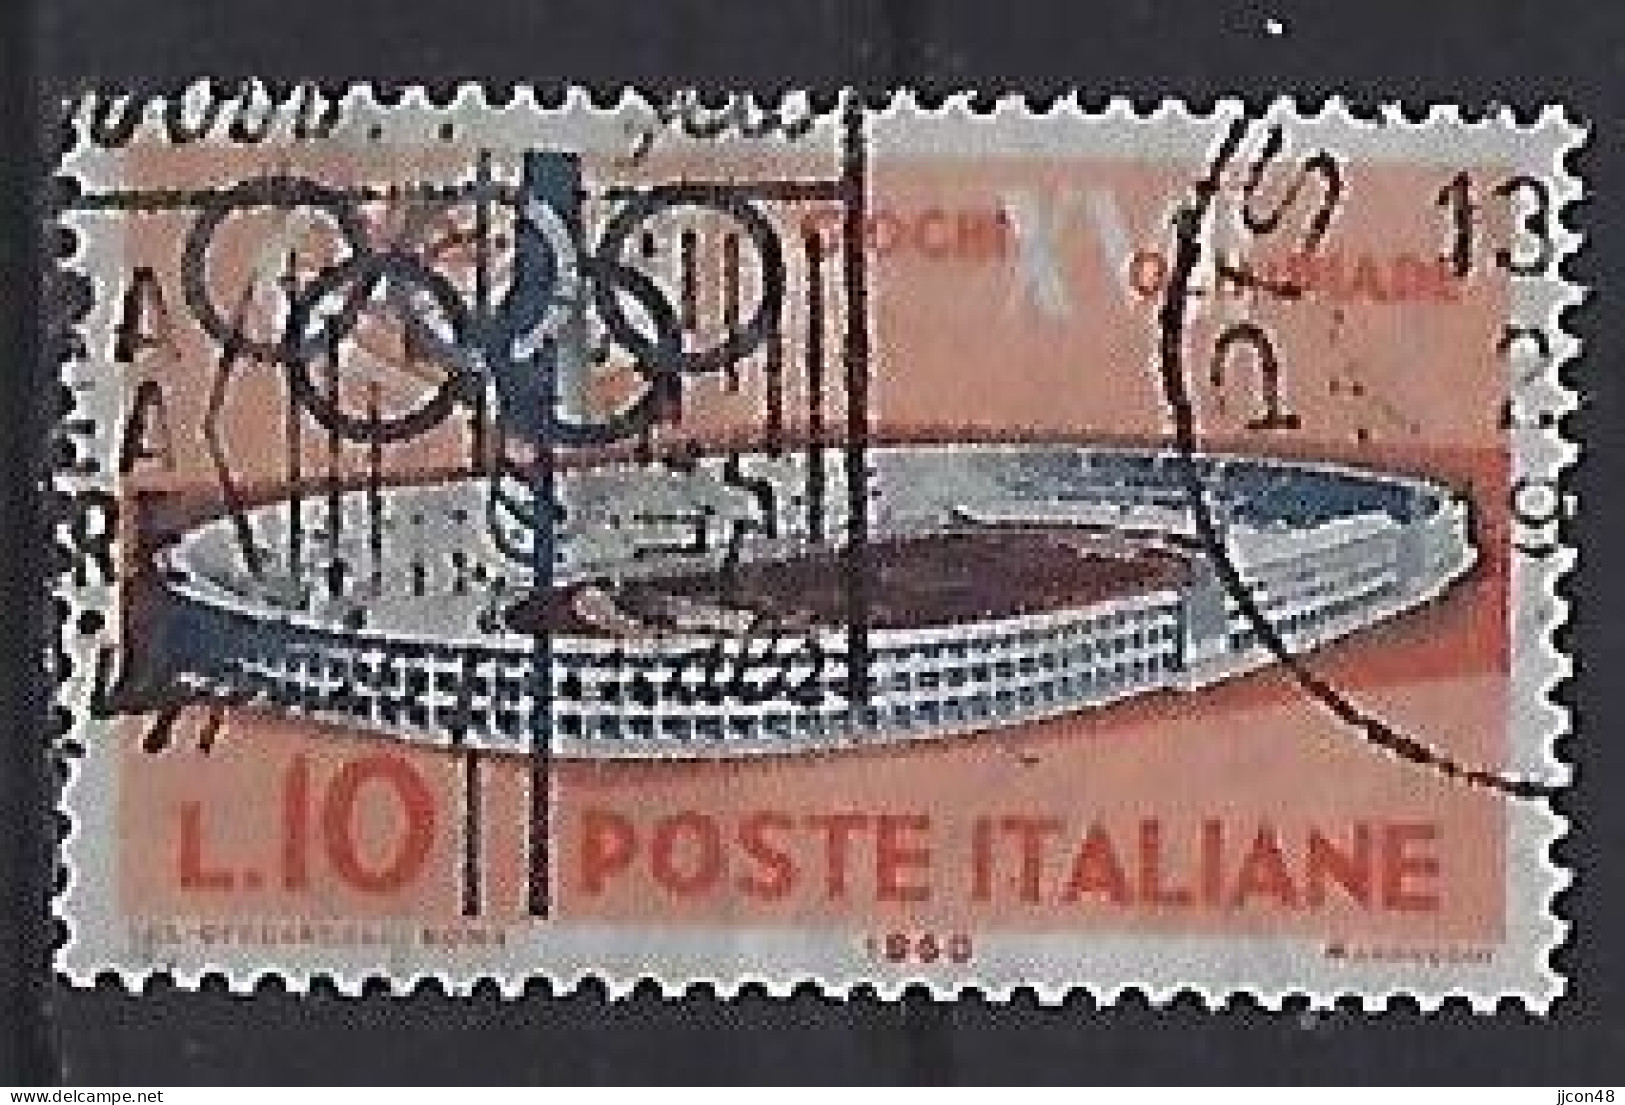 Italy 1960  Olympische Sommerspielen, Rom (o) Mi.1065 - 1946-60: Usati